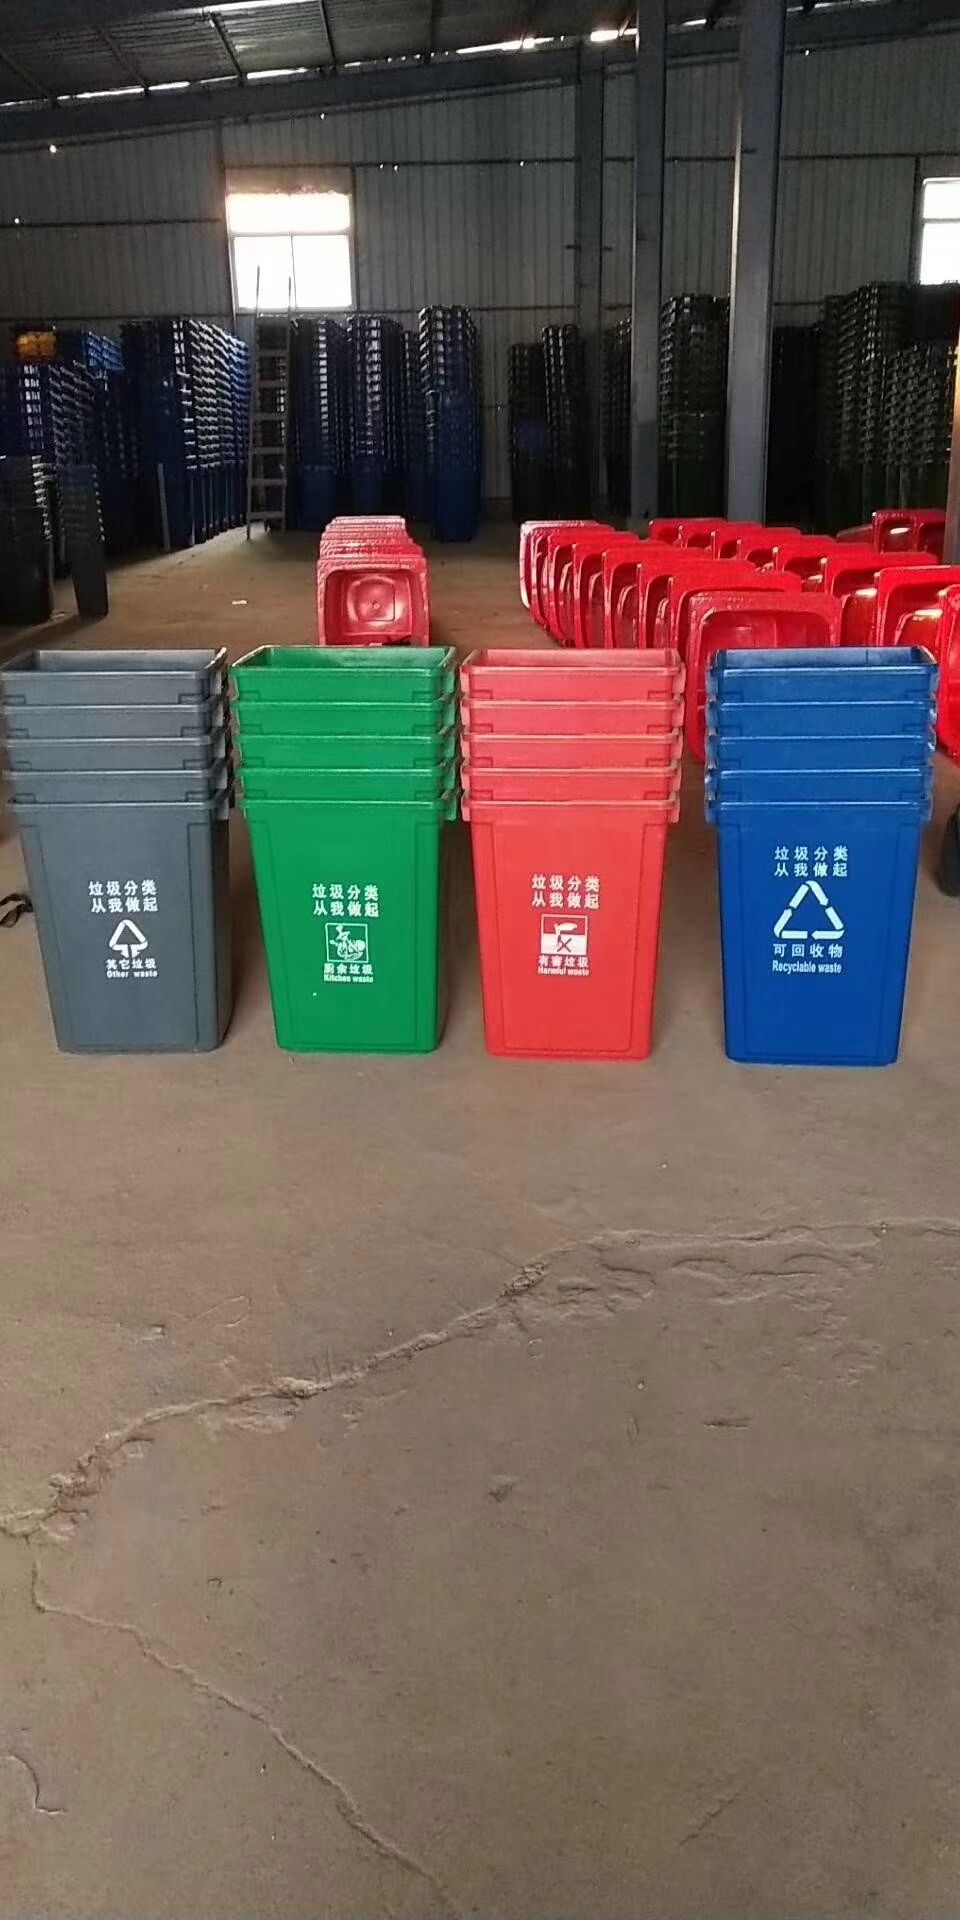 北京市四色塑料分类垃圾桶厂家北京供应四色塑料分类垃圾桶 北京四色塑料分类垃圾桶